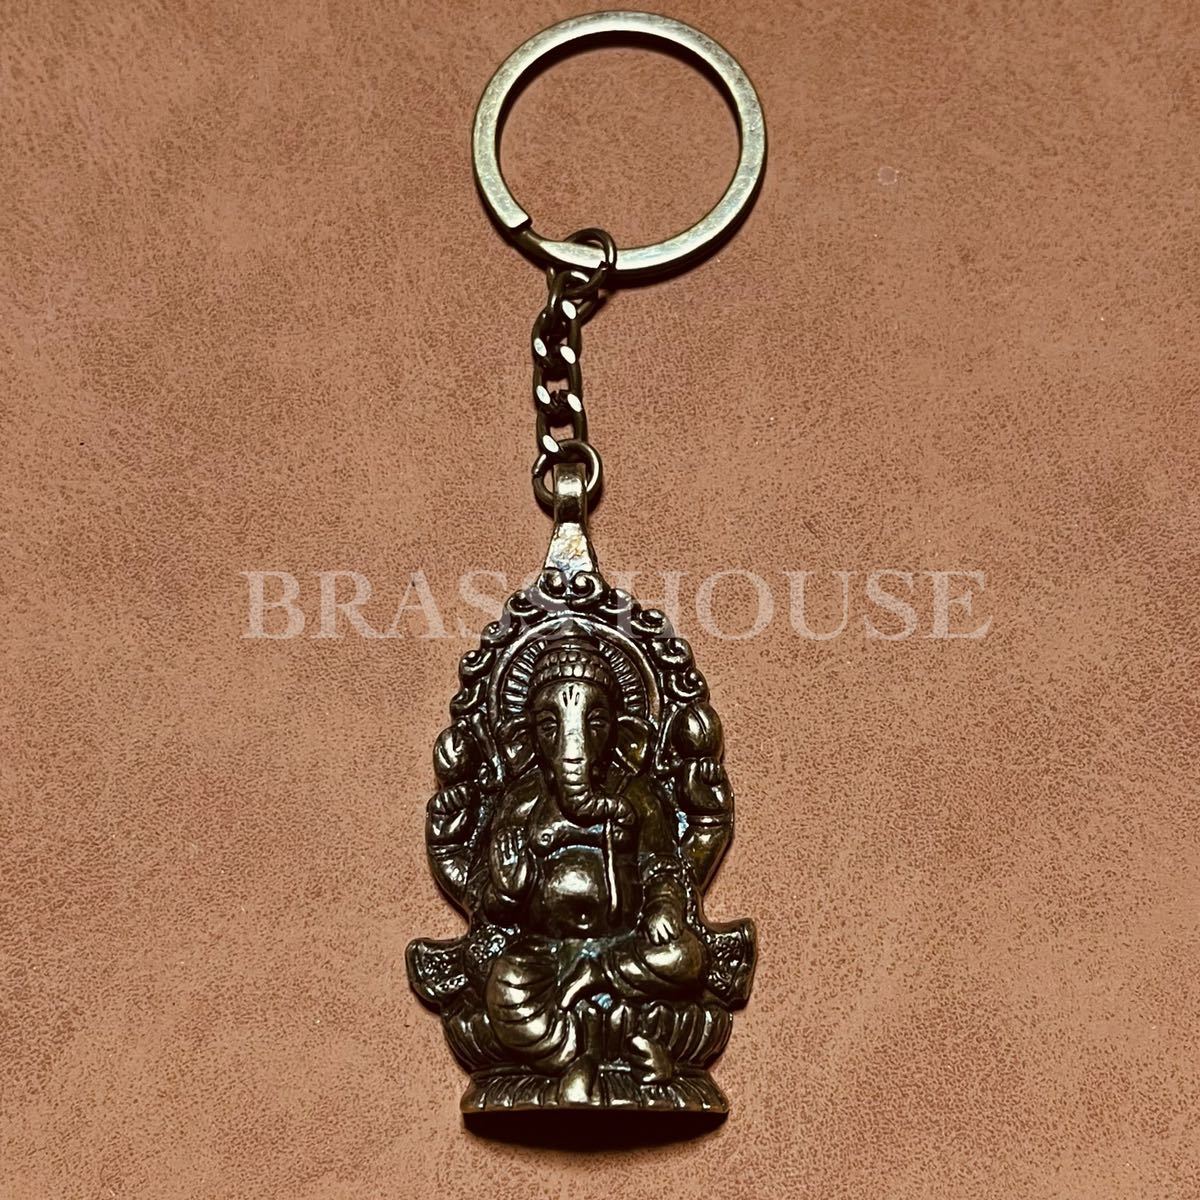 F18 Dieu indien Ganesha porte-clés dieu hindou bouddha amulette ornement en laiton bonne chance argent chance financière chance avantage mondial, marchandises diverses, porte-clés, Fait main